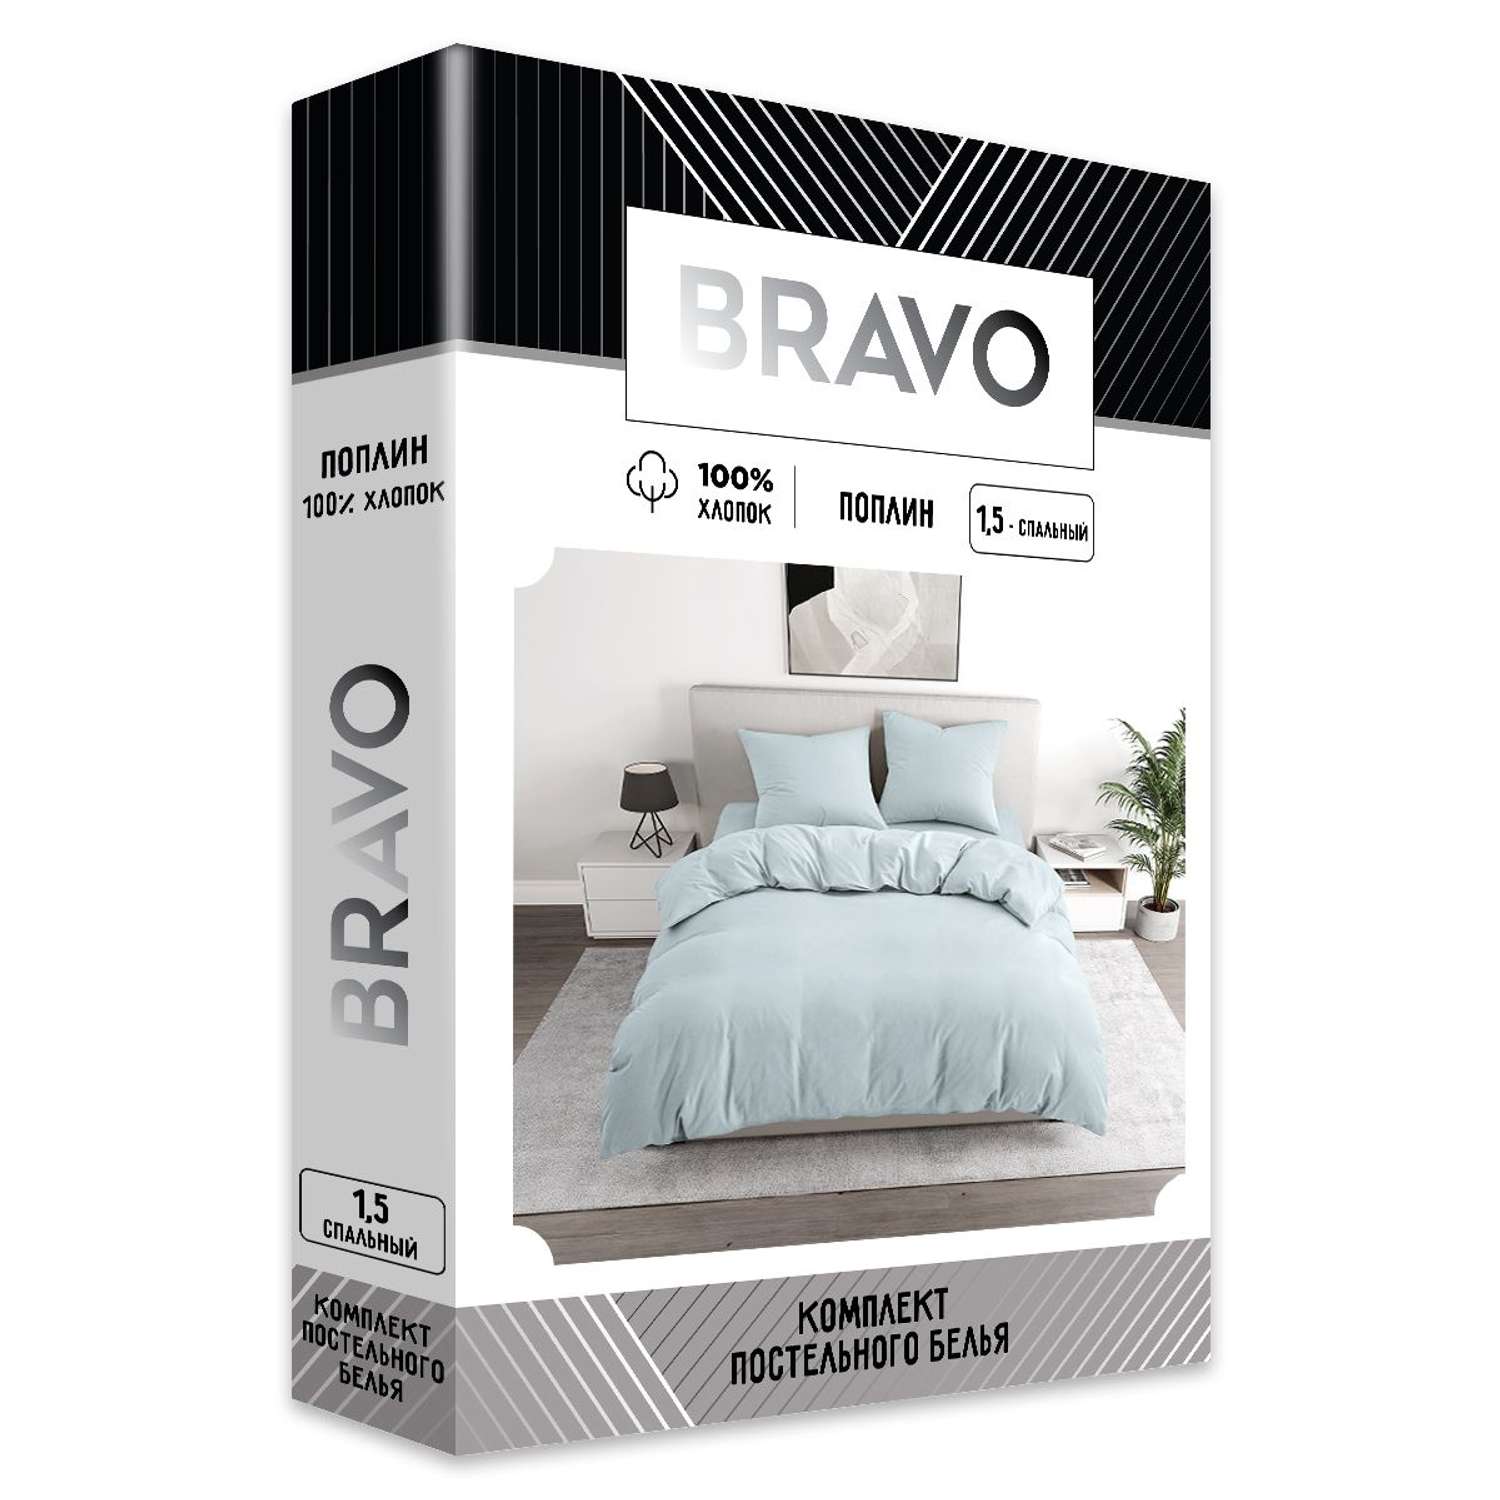 Комплект постельного белья BRAVO 1.5-спальный наволочки 70х70 рис.5835-1 голубой - фото 5